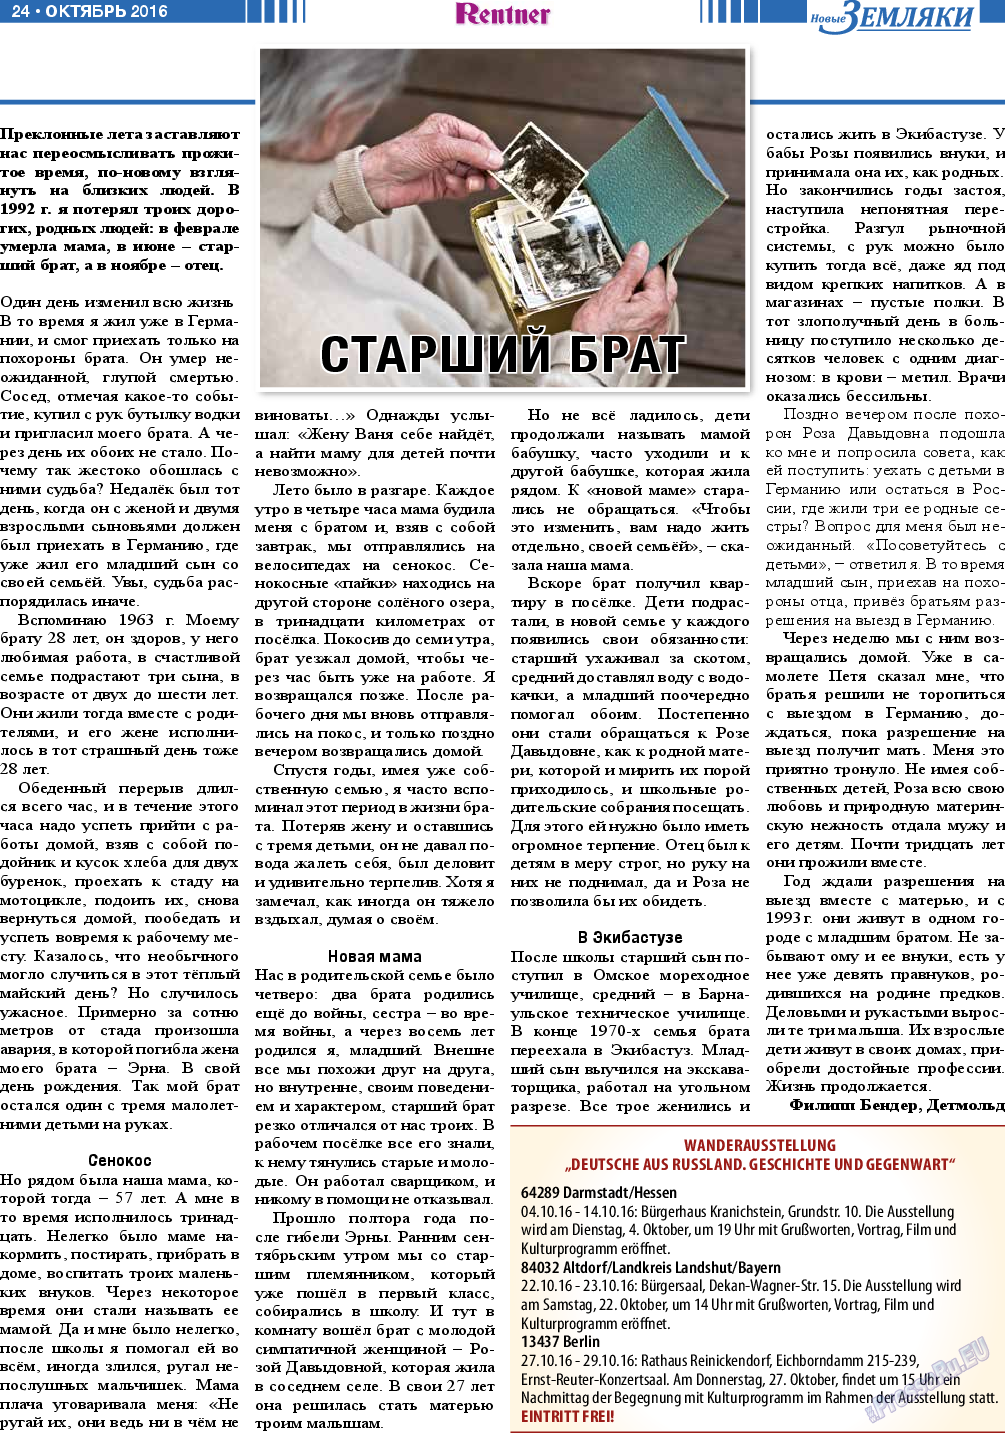 Новые Земляки, газета. 2016 №10 стр.24